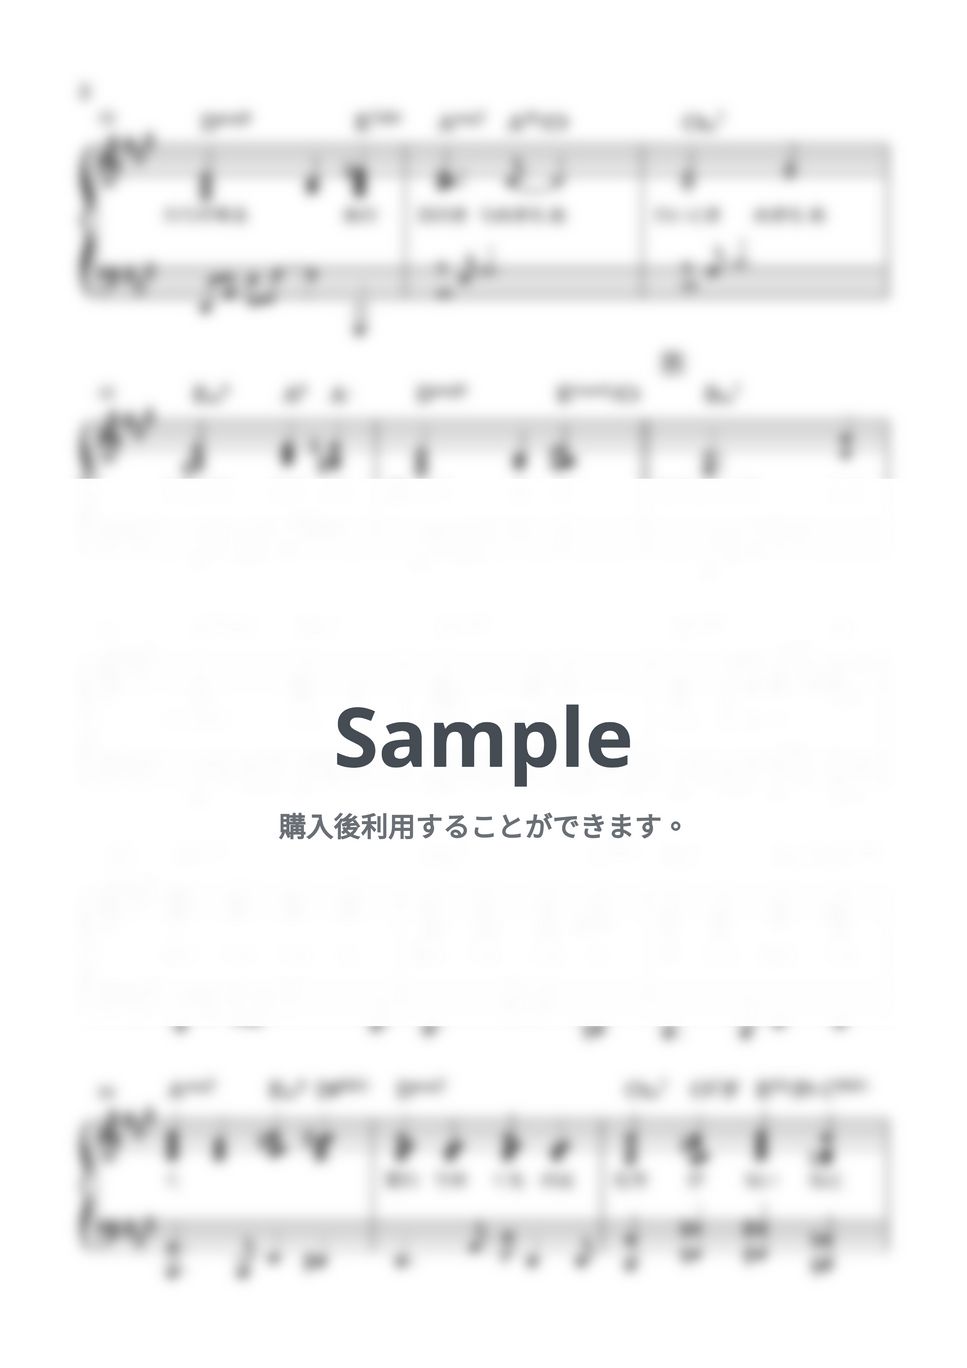 藤井風 - 満ちてゆく (弾き語り伴奏のみ) by miiの楽譜棚